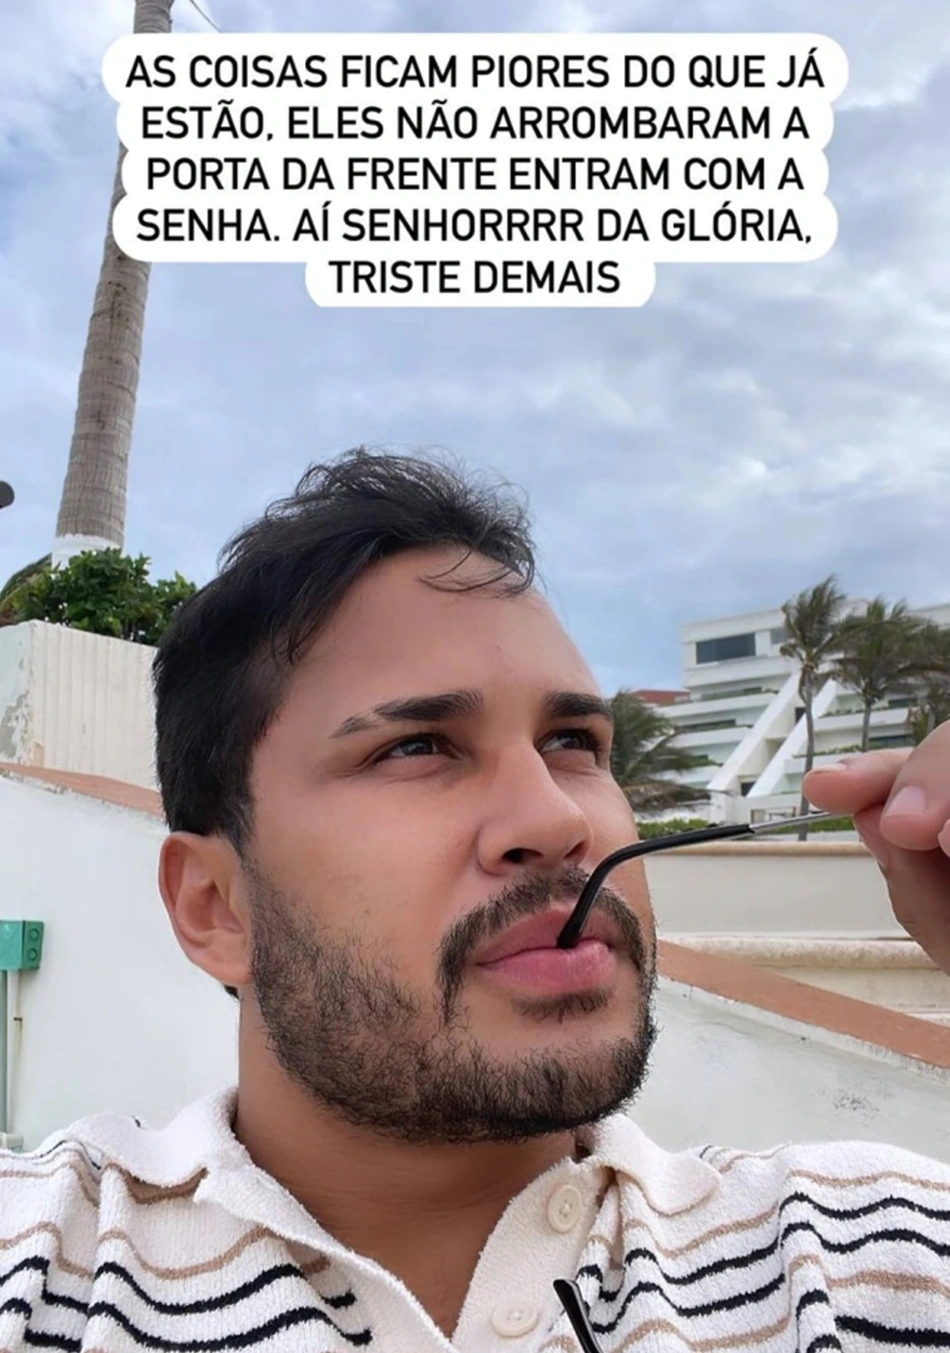 Lucas Guimarães compartilhou informações sobre o assalto no Instagram